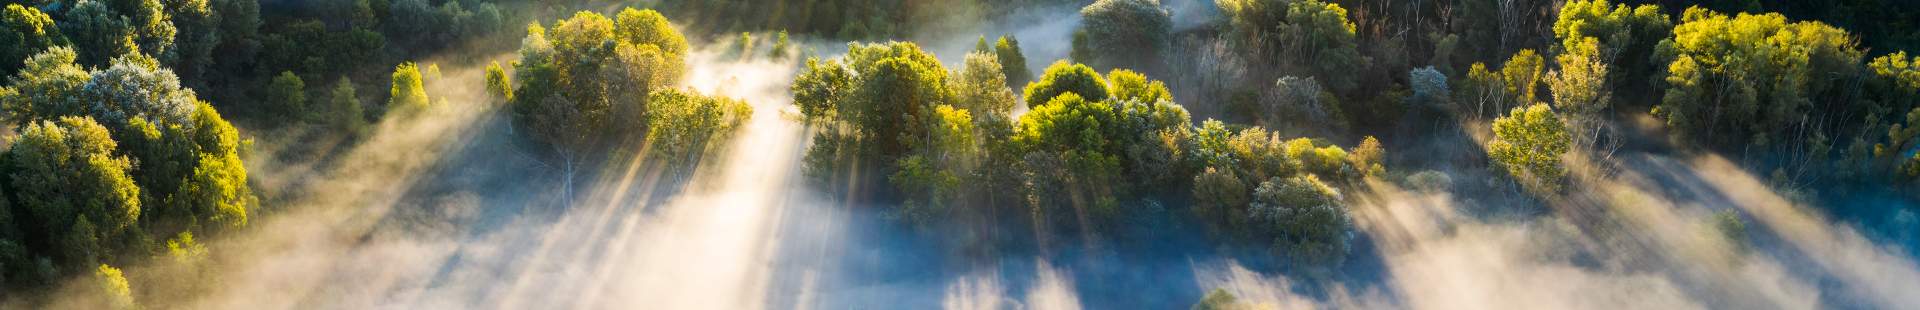 Ein im Nebel liegendes Tal mit Bäumen im Sonnenschein.